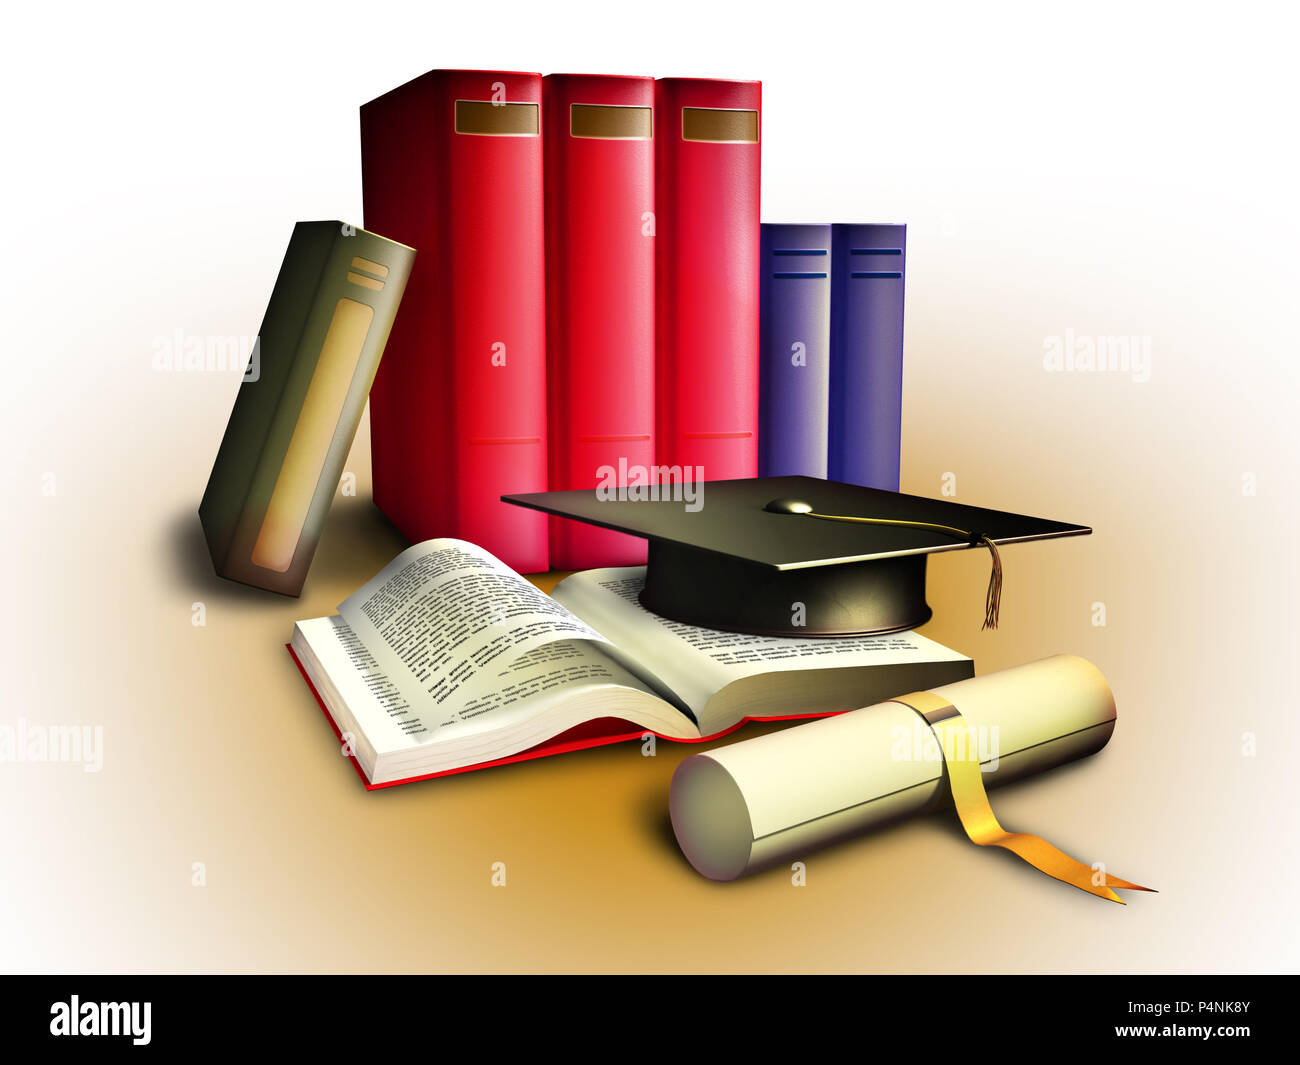 Diplom, einige Bücher und eine Hochschule hat, Bildung Konzept. Beschneidungspfad enthalten thema von hintergrund zu isolieren. Digitale Illustration. Stockfoto